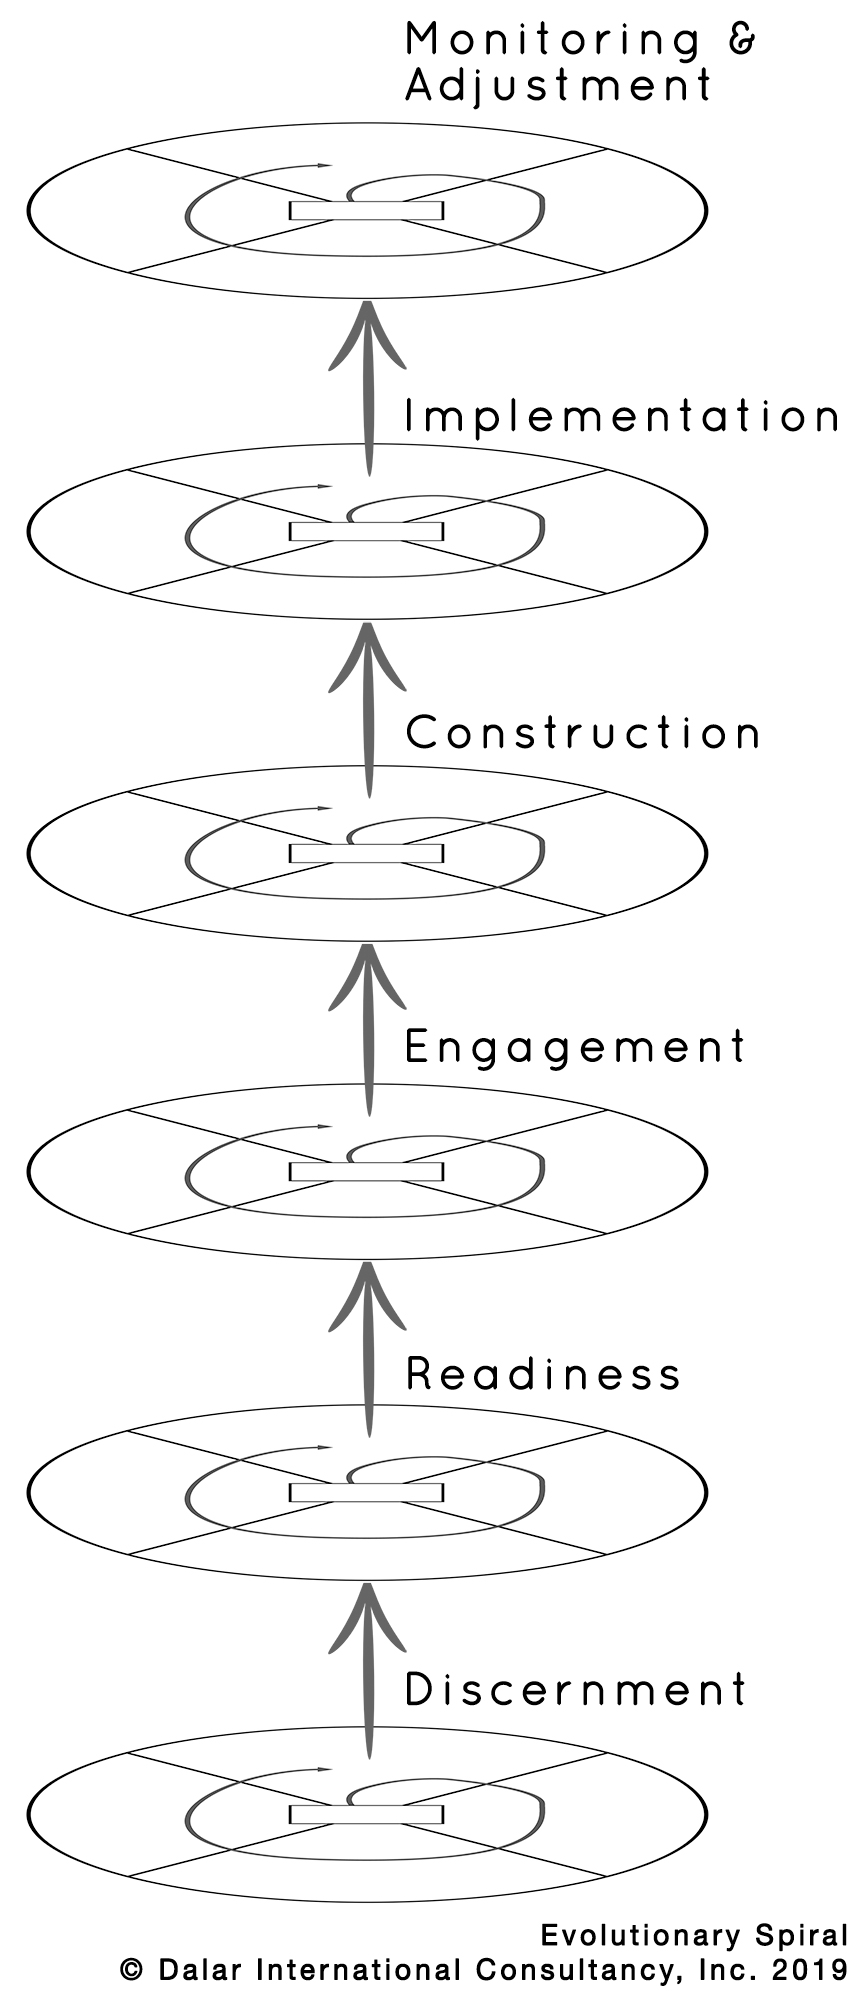 Evolutionary spiral of the Genuine Contact program.